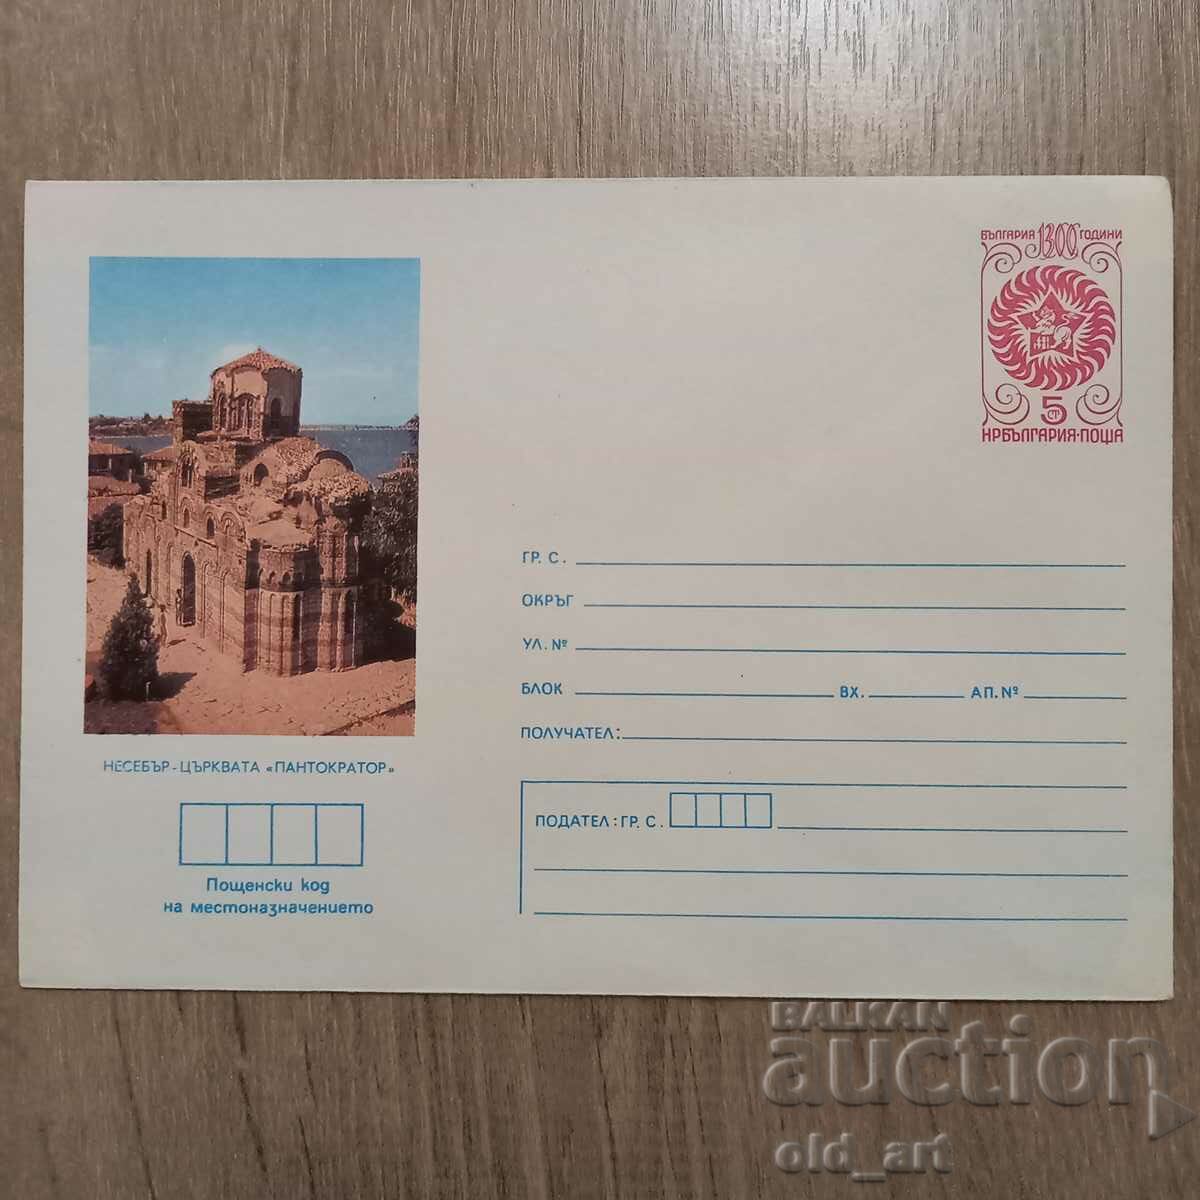 Ταχυδρομικός φάκελος - Nessebar, η εκκλησία του Παντοκράτορα